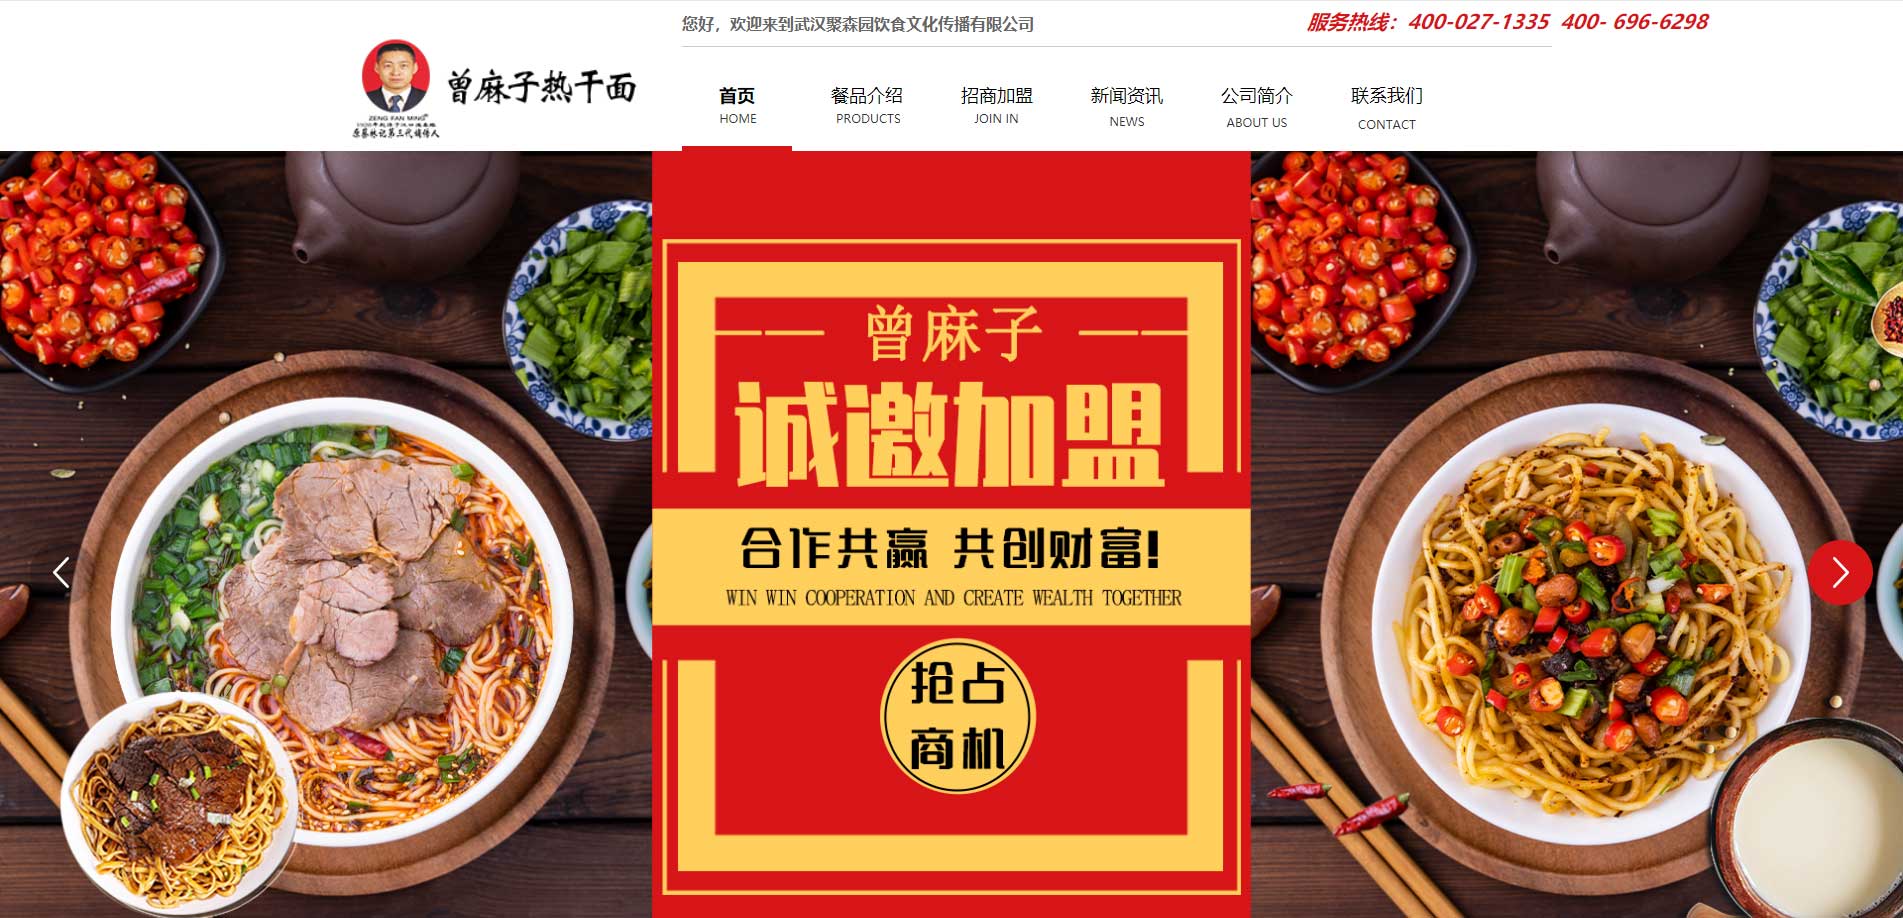 武汉聚森园饮食文化传播有限公司官方网站正式上线啦！！！